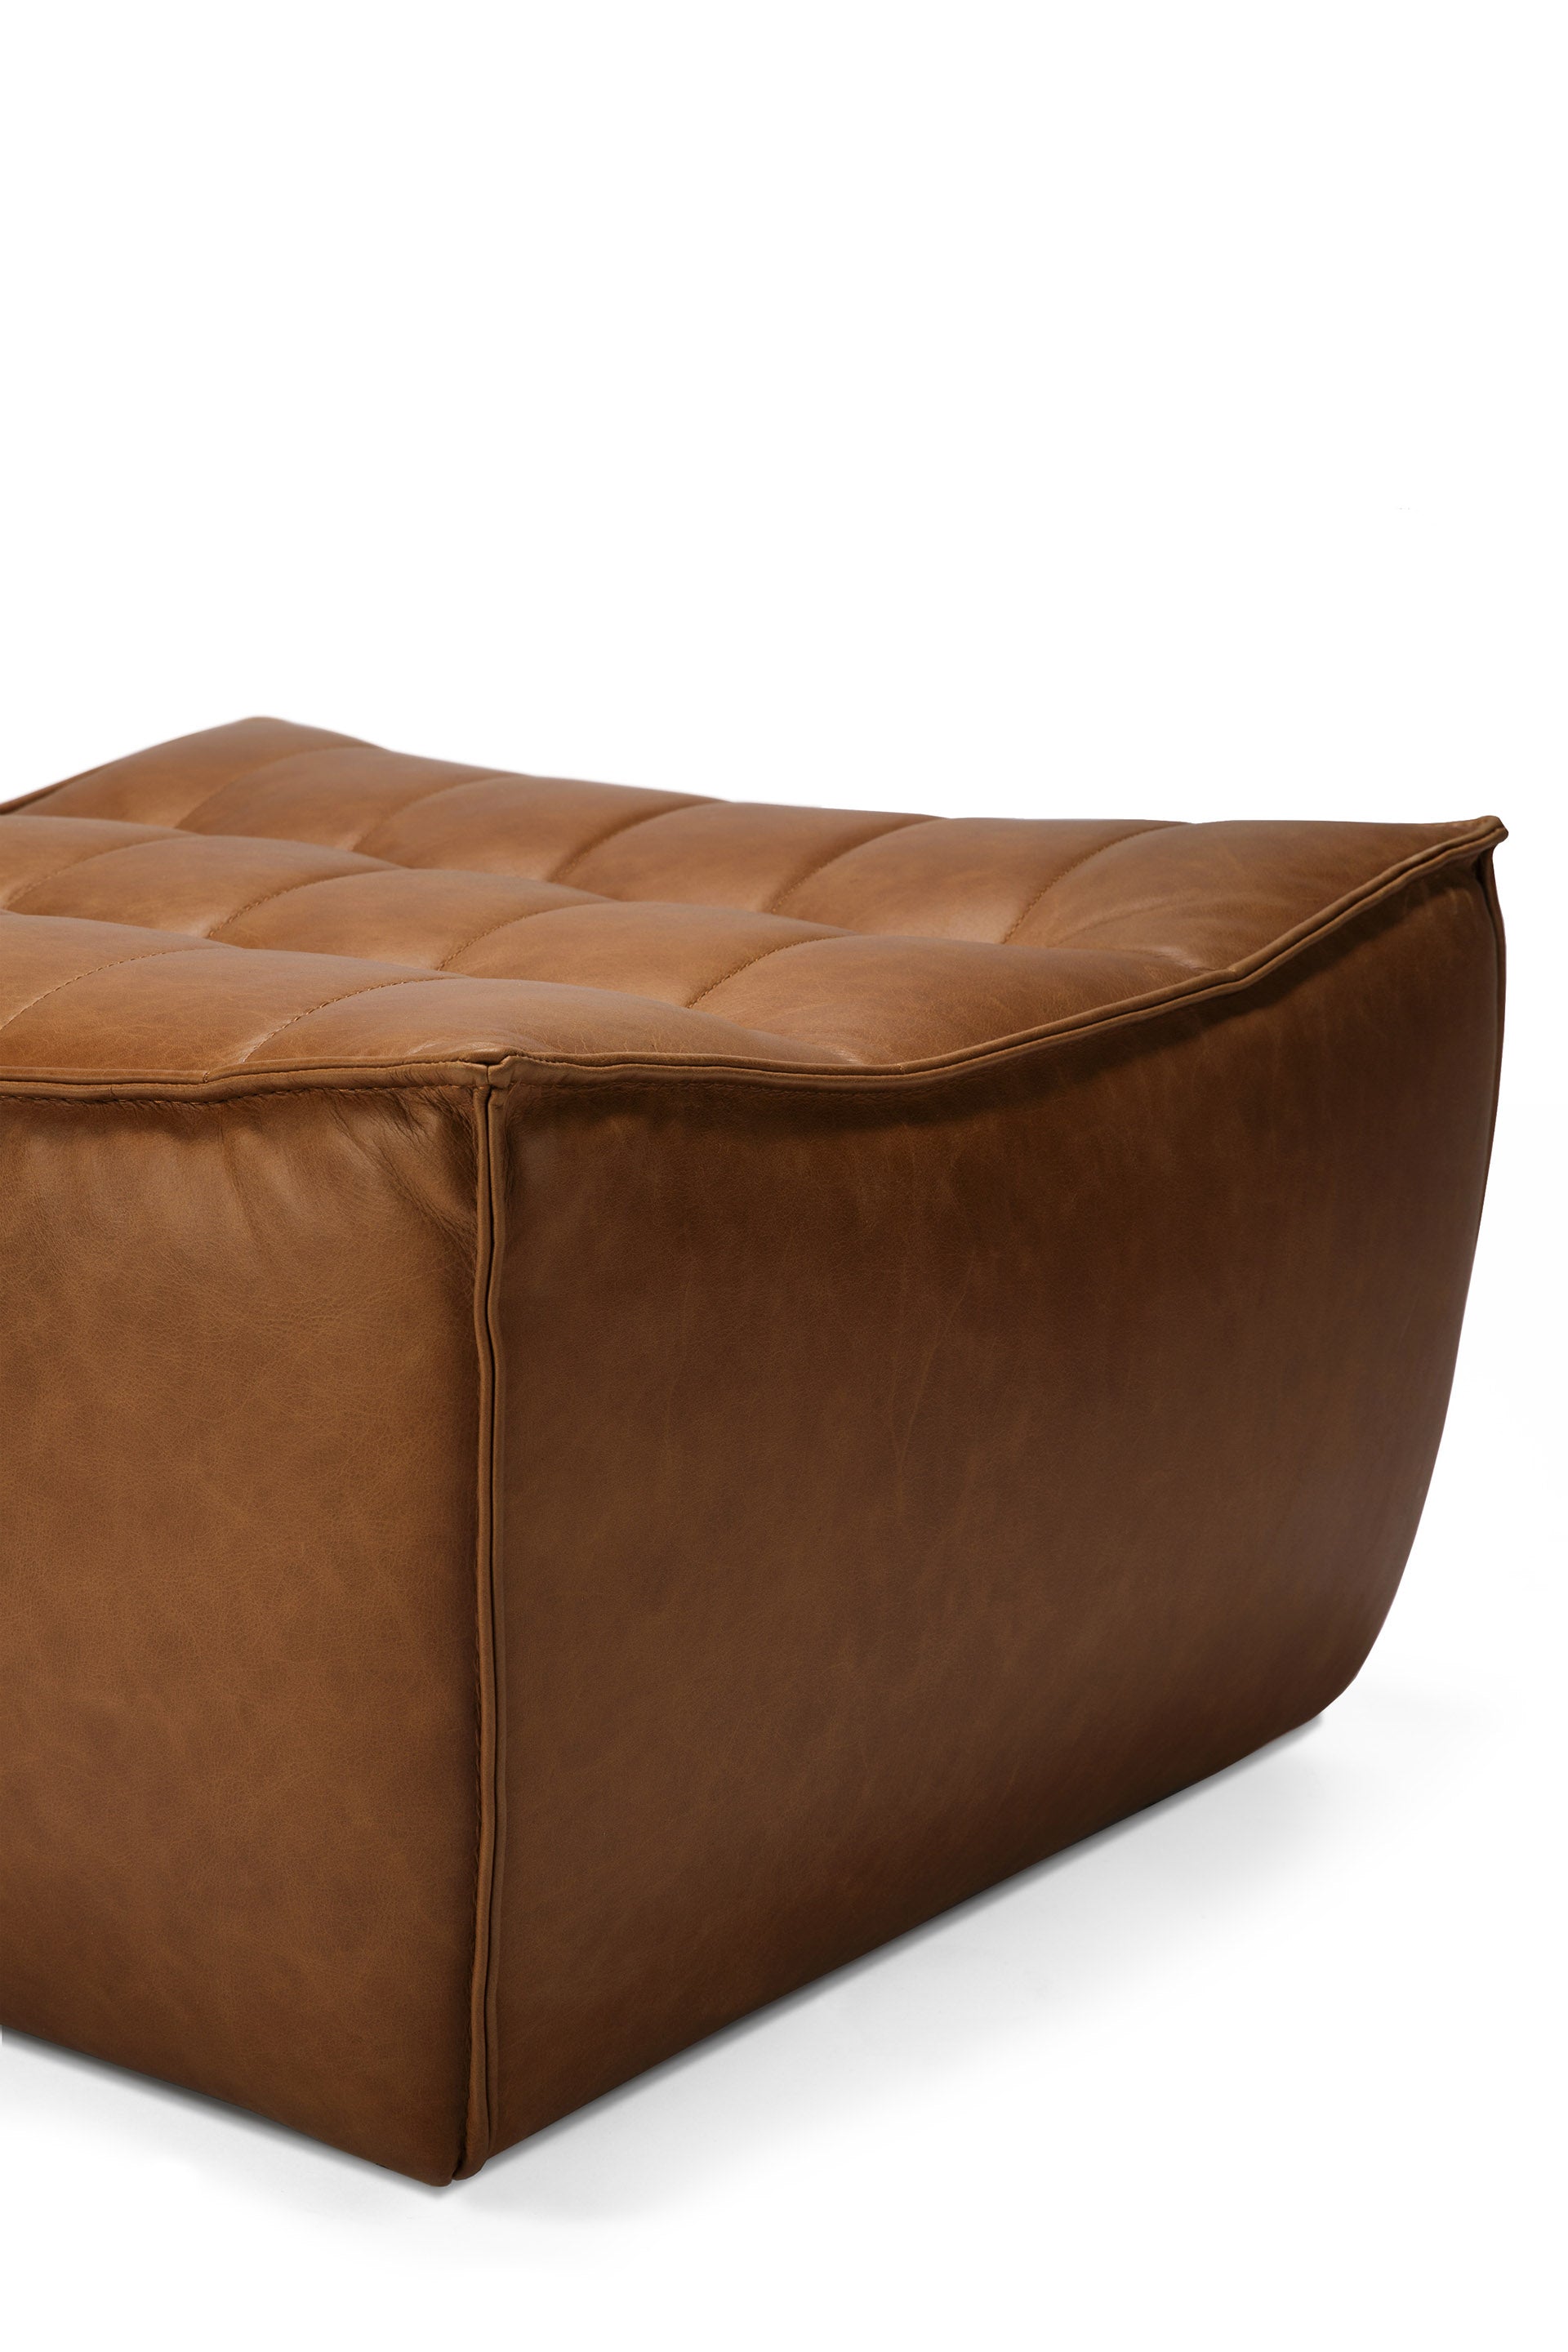 N701 Footstool, Old Saddle Leather